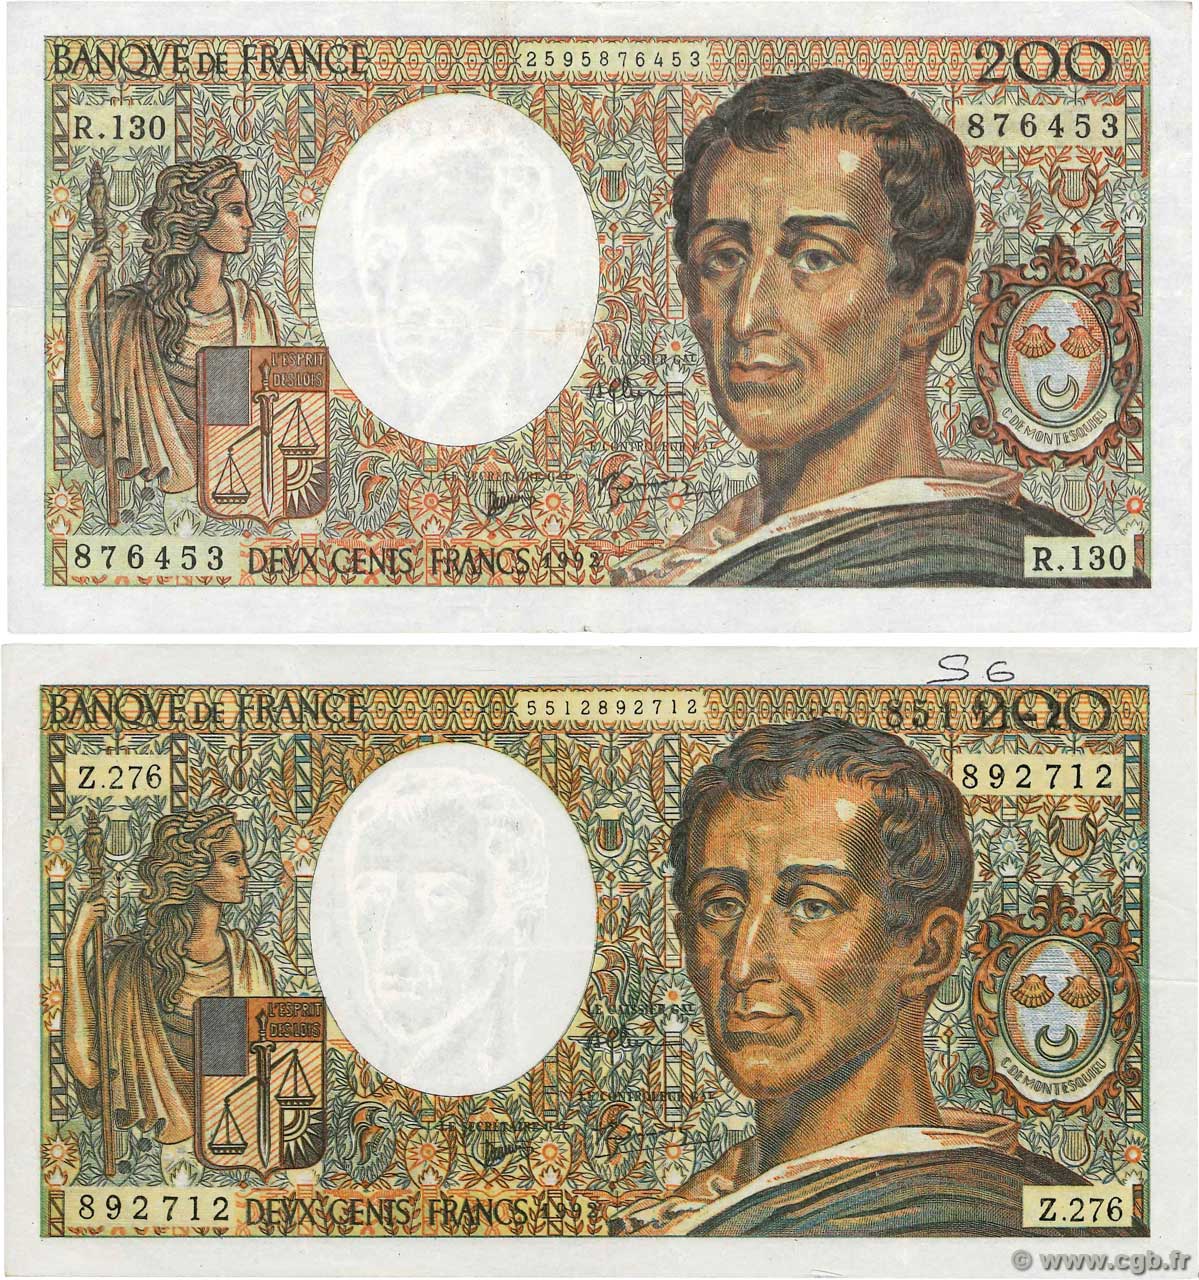 200 Francs MONTESQUIEU Faux FRANCIA  1992 F.70.12x MBC